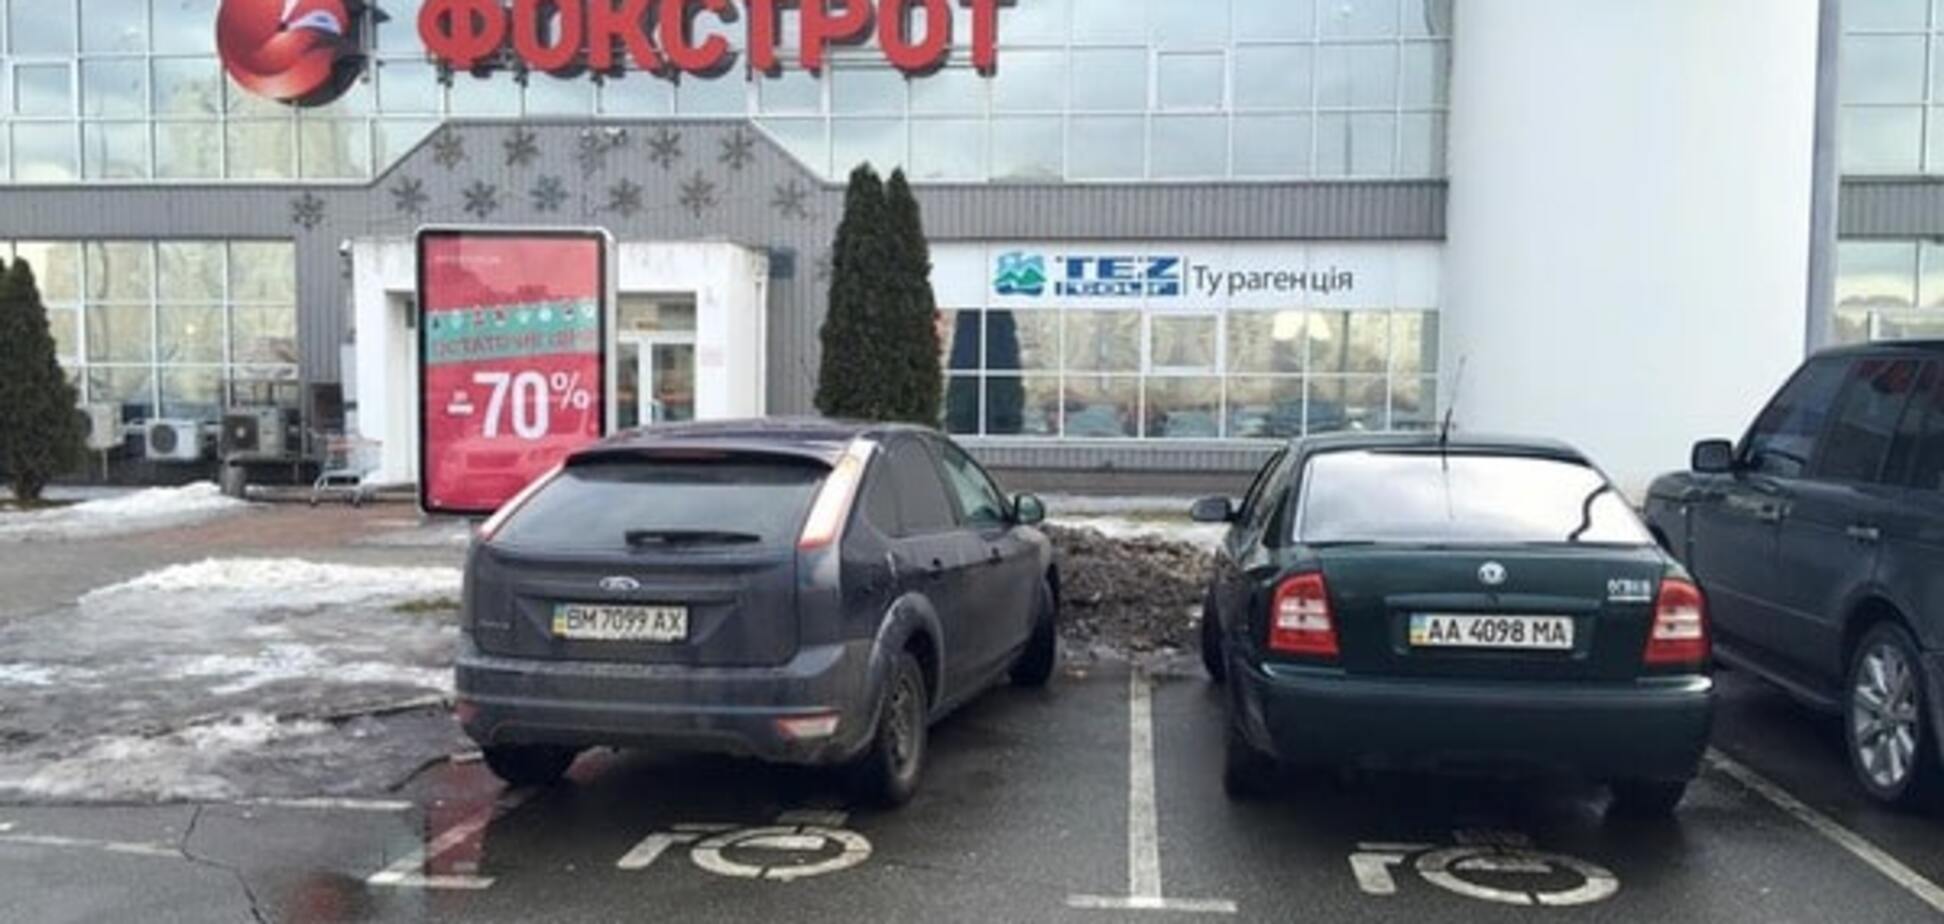 Инвалиды подождут: в Киеве автохамы заняли чужие места на парковке